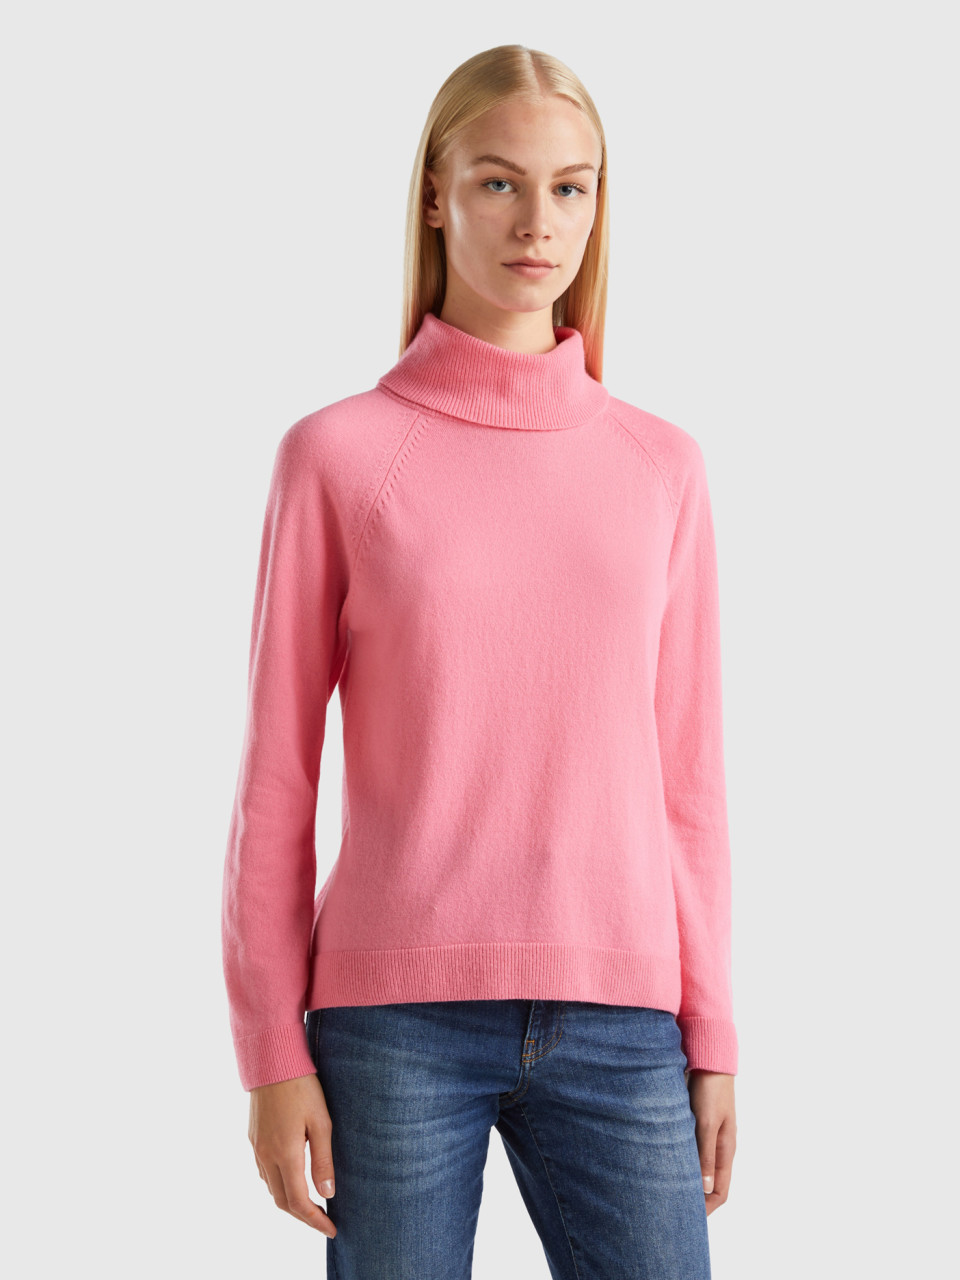 Benetton, Rollkragenpullover In Einer Mischung Aus Wolle Und Cashmere In Rosa, Pink, female